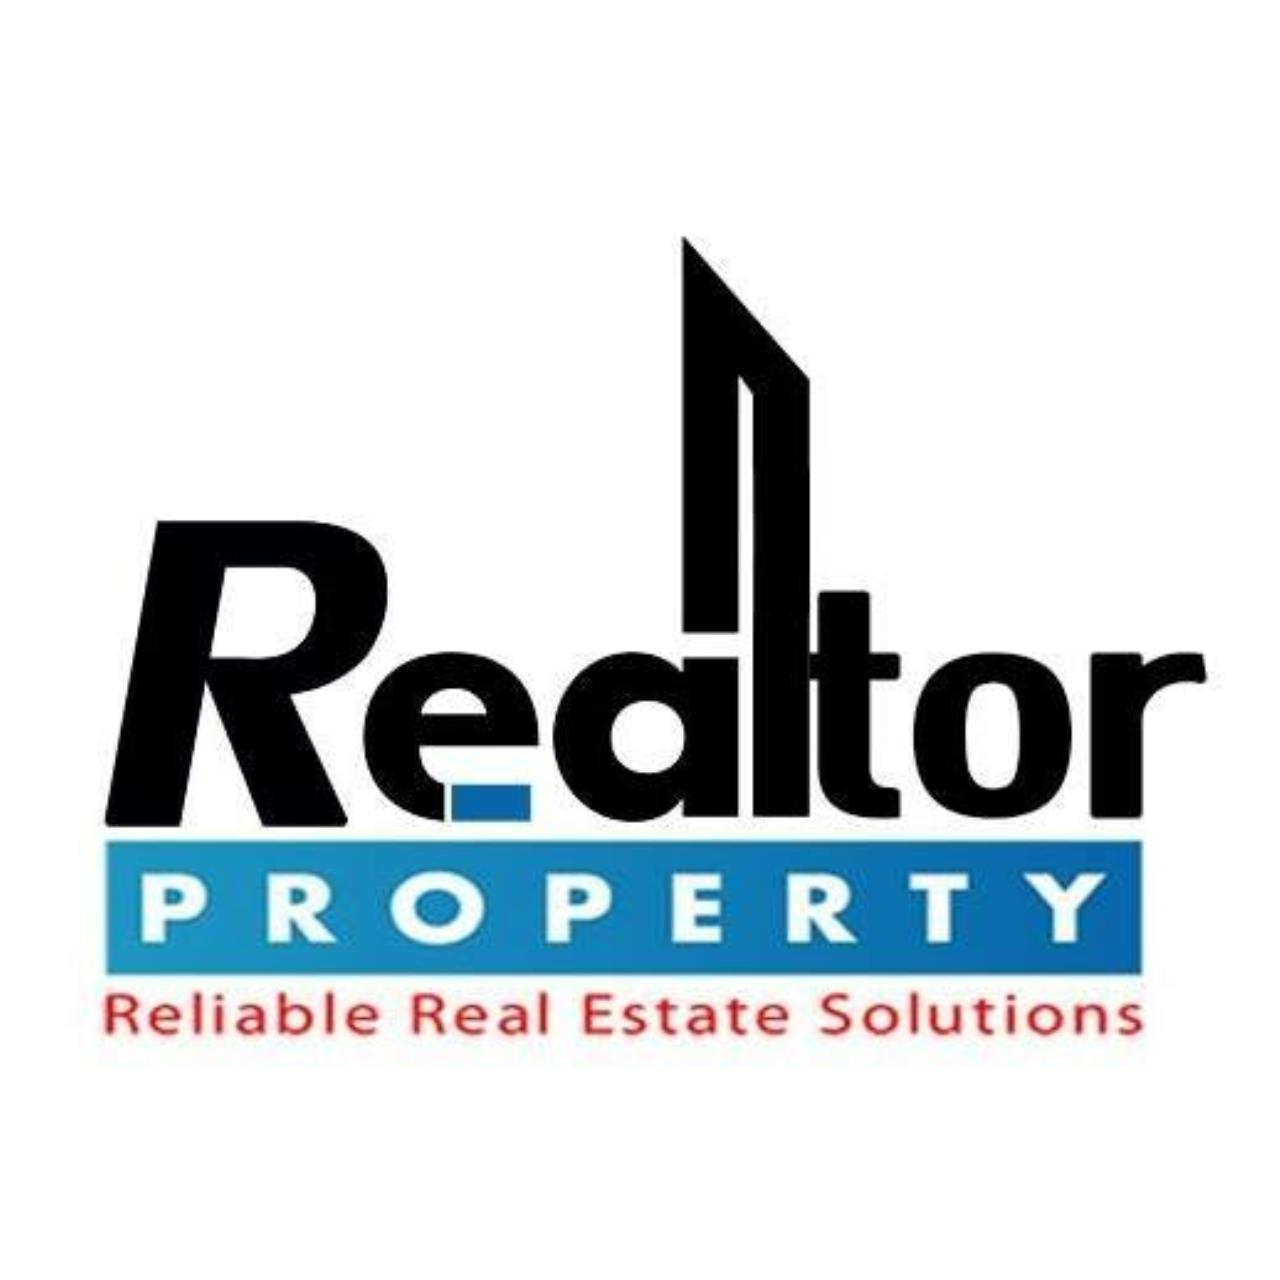 Realtor Property Thailand  - Thana logo